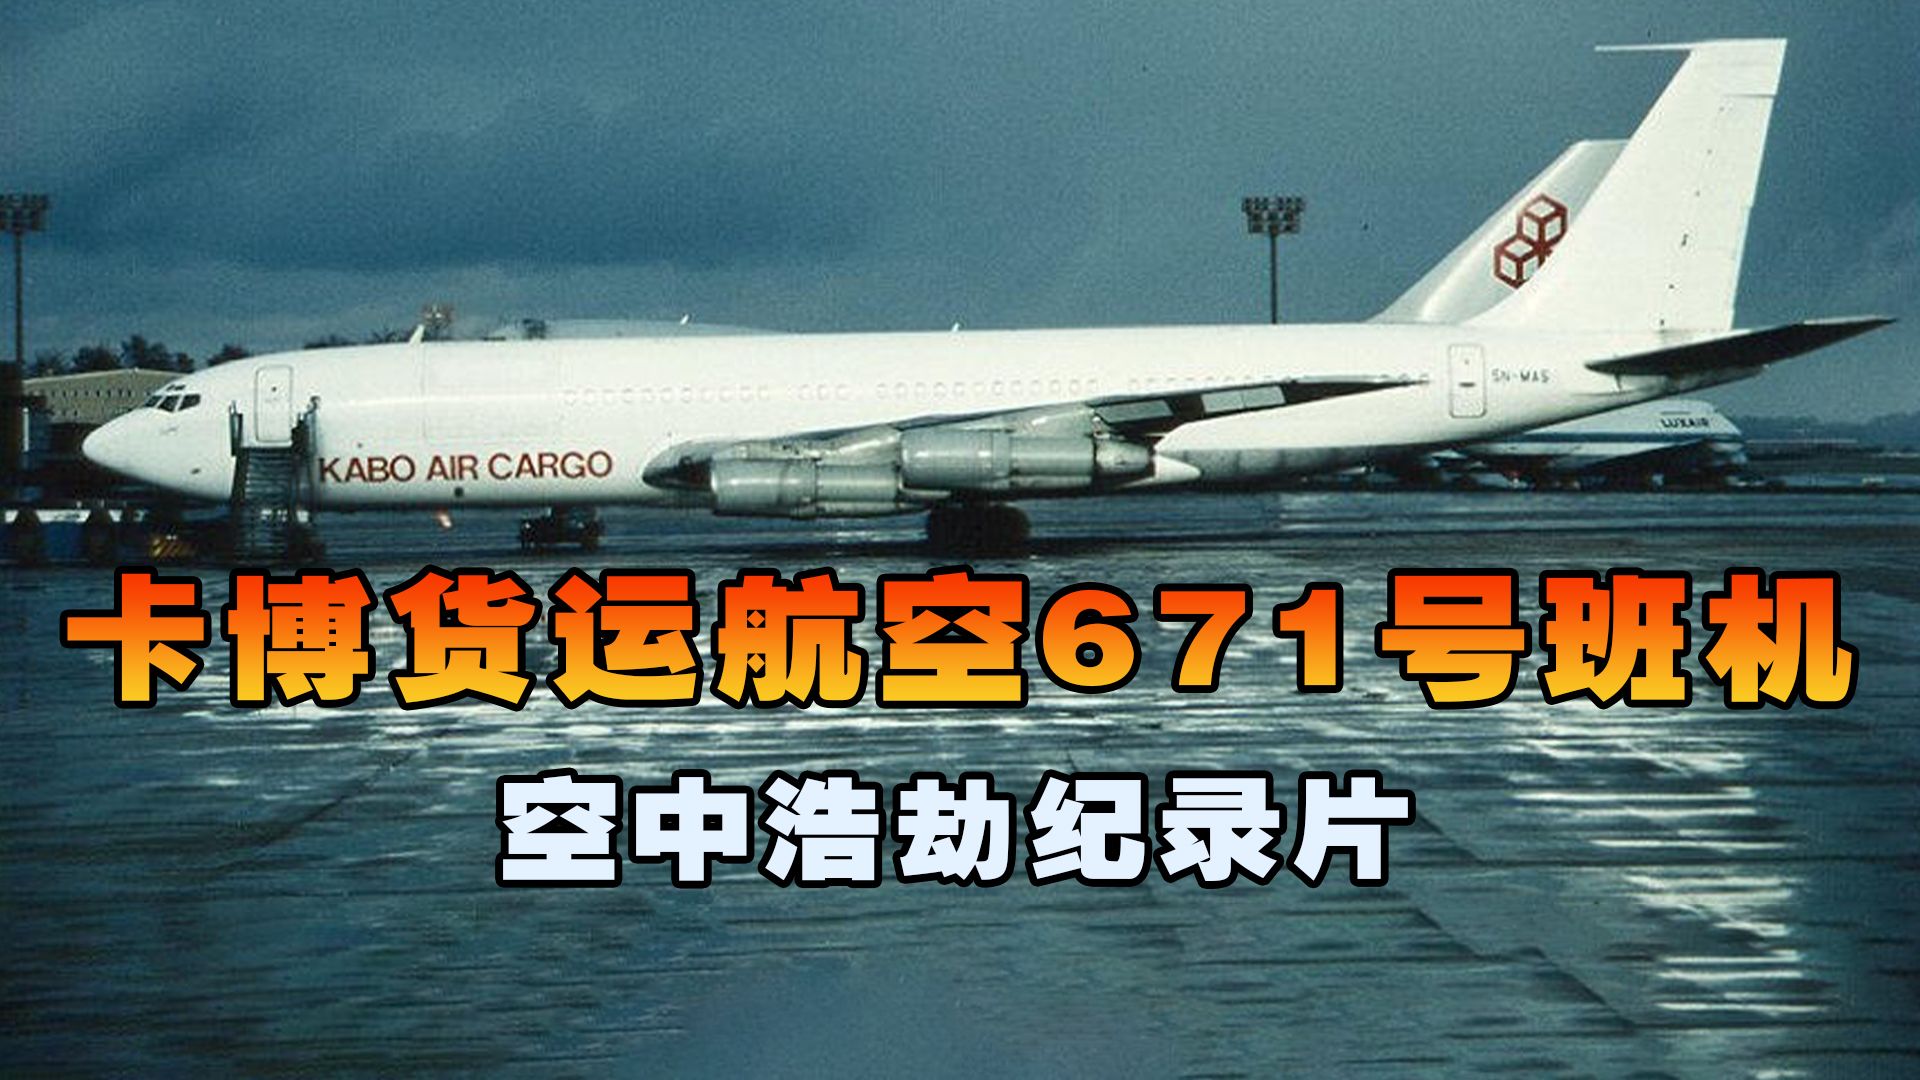 卡博货运航空671号班机，客机高空引擎突然遭遇致命故障，空中浩劫